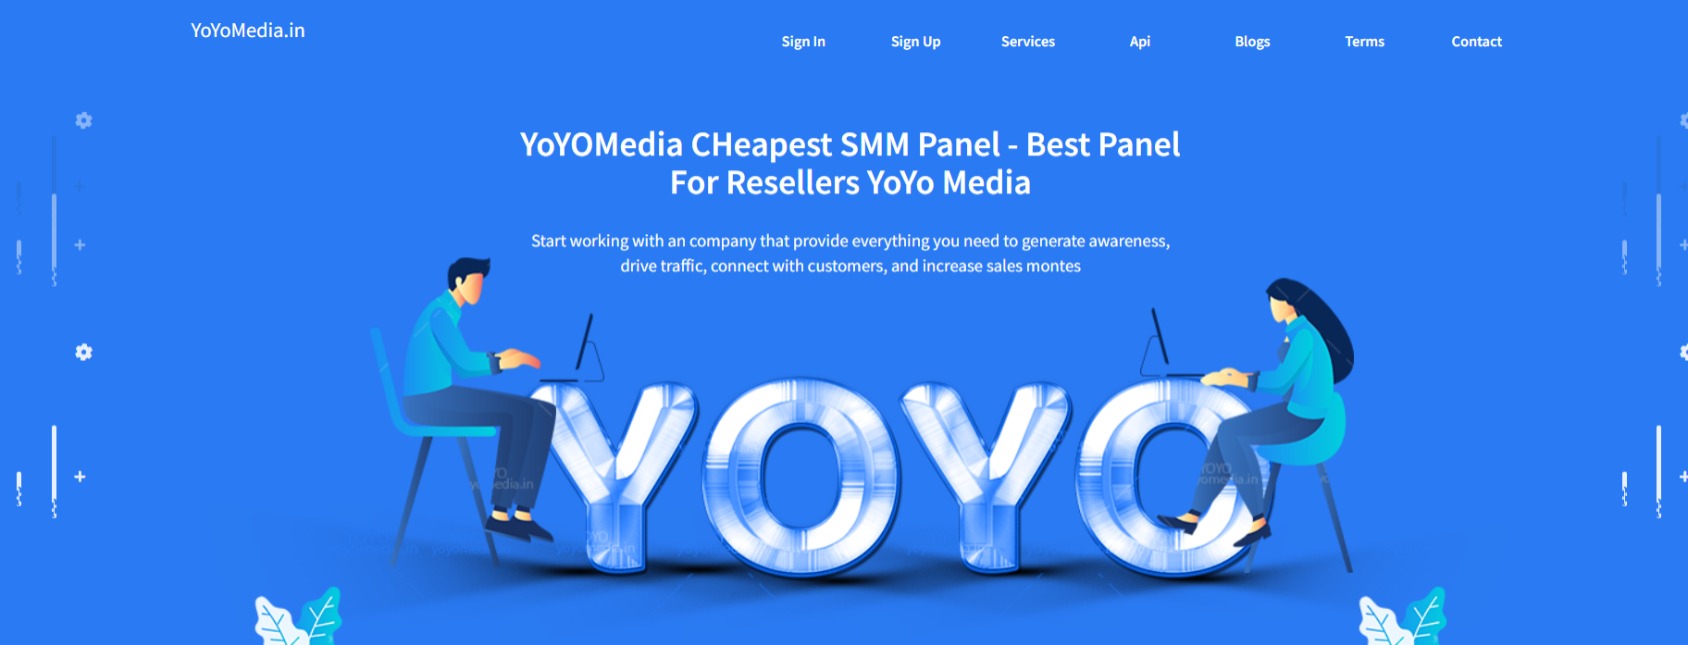 yoyo media